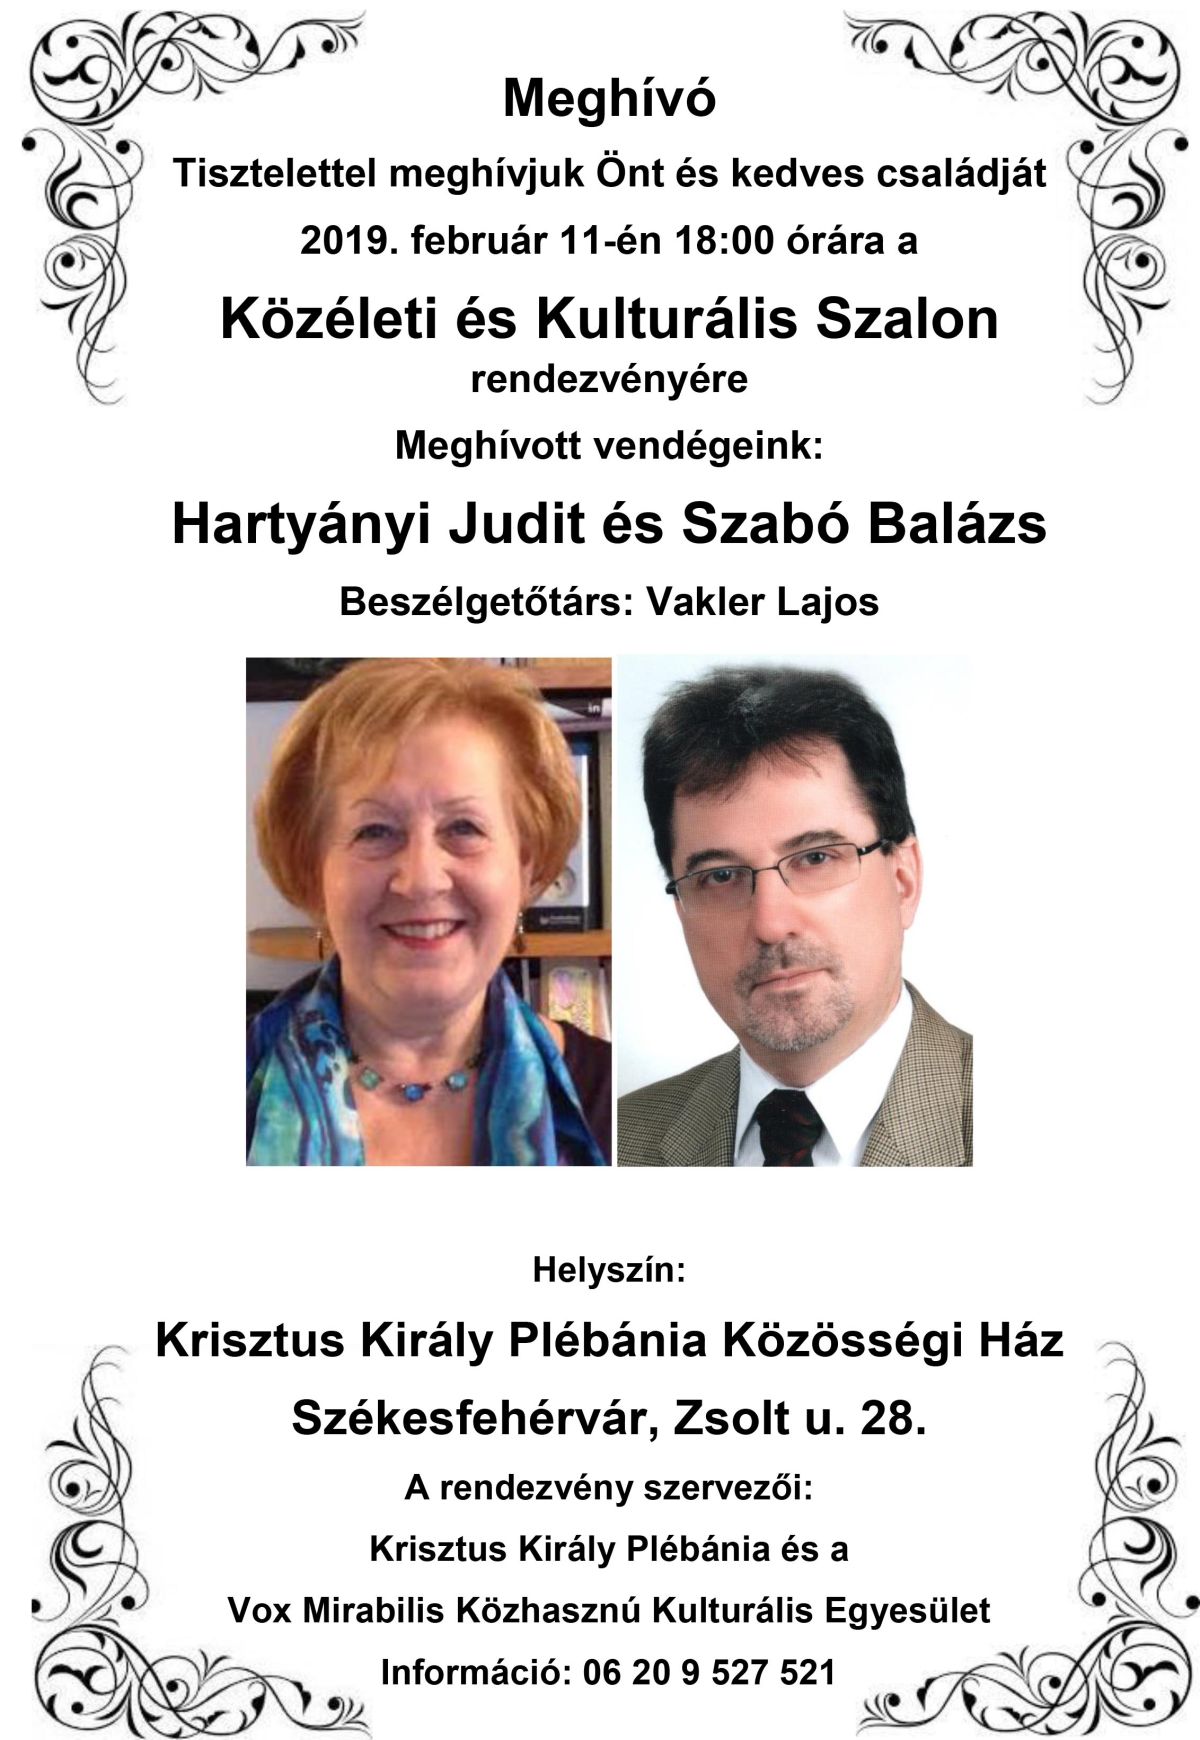 Hartyányi Judit és Dr. Szabó Balázs lesz a Közéleti és Kulturális Szalon vendége